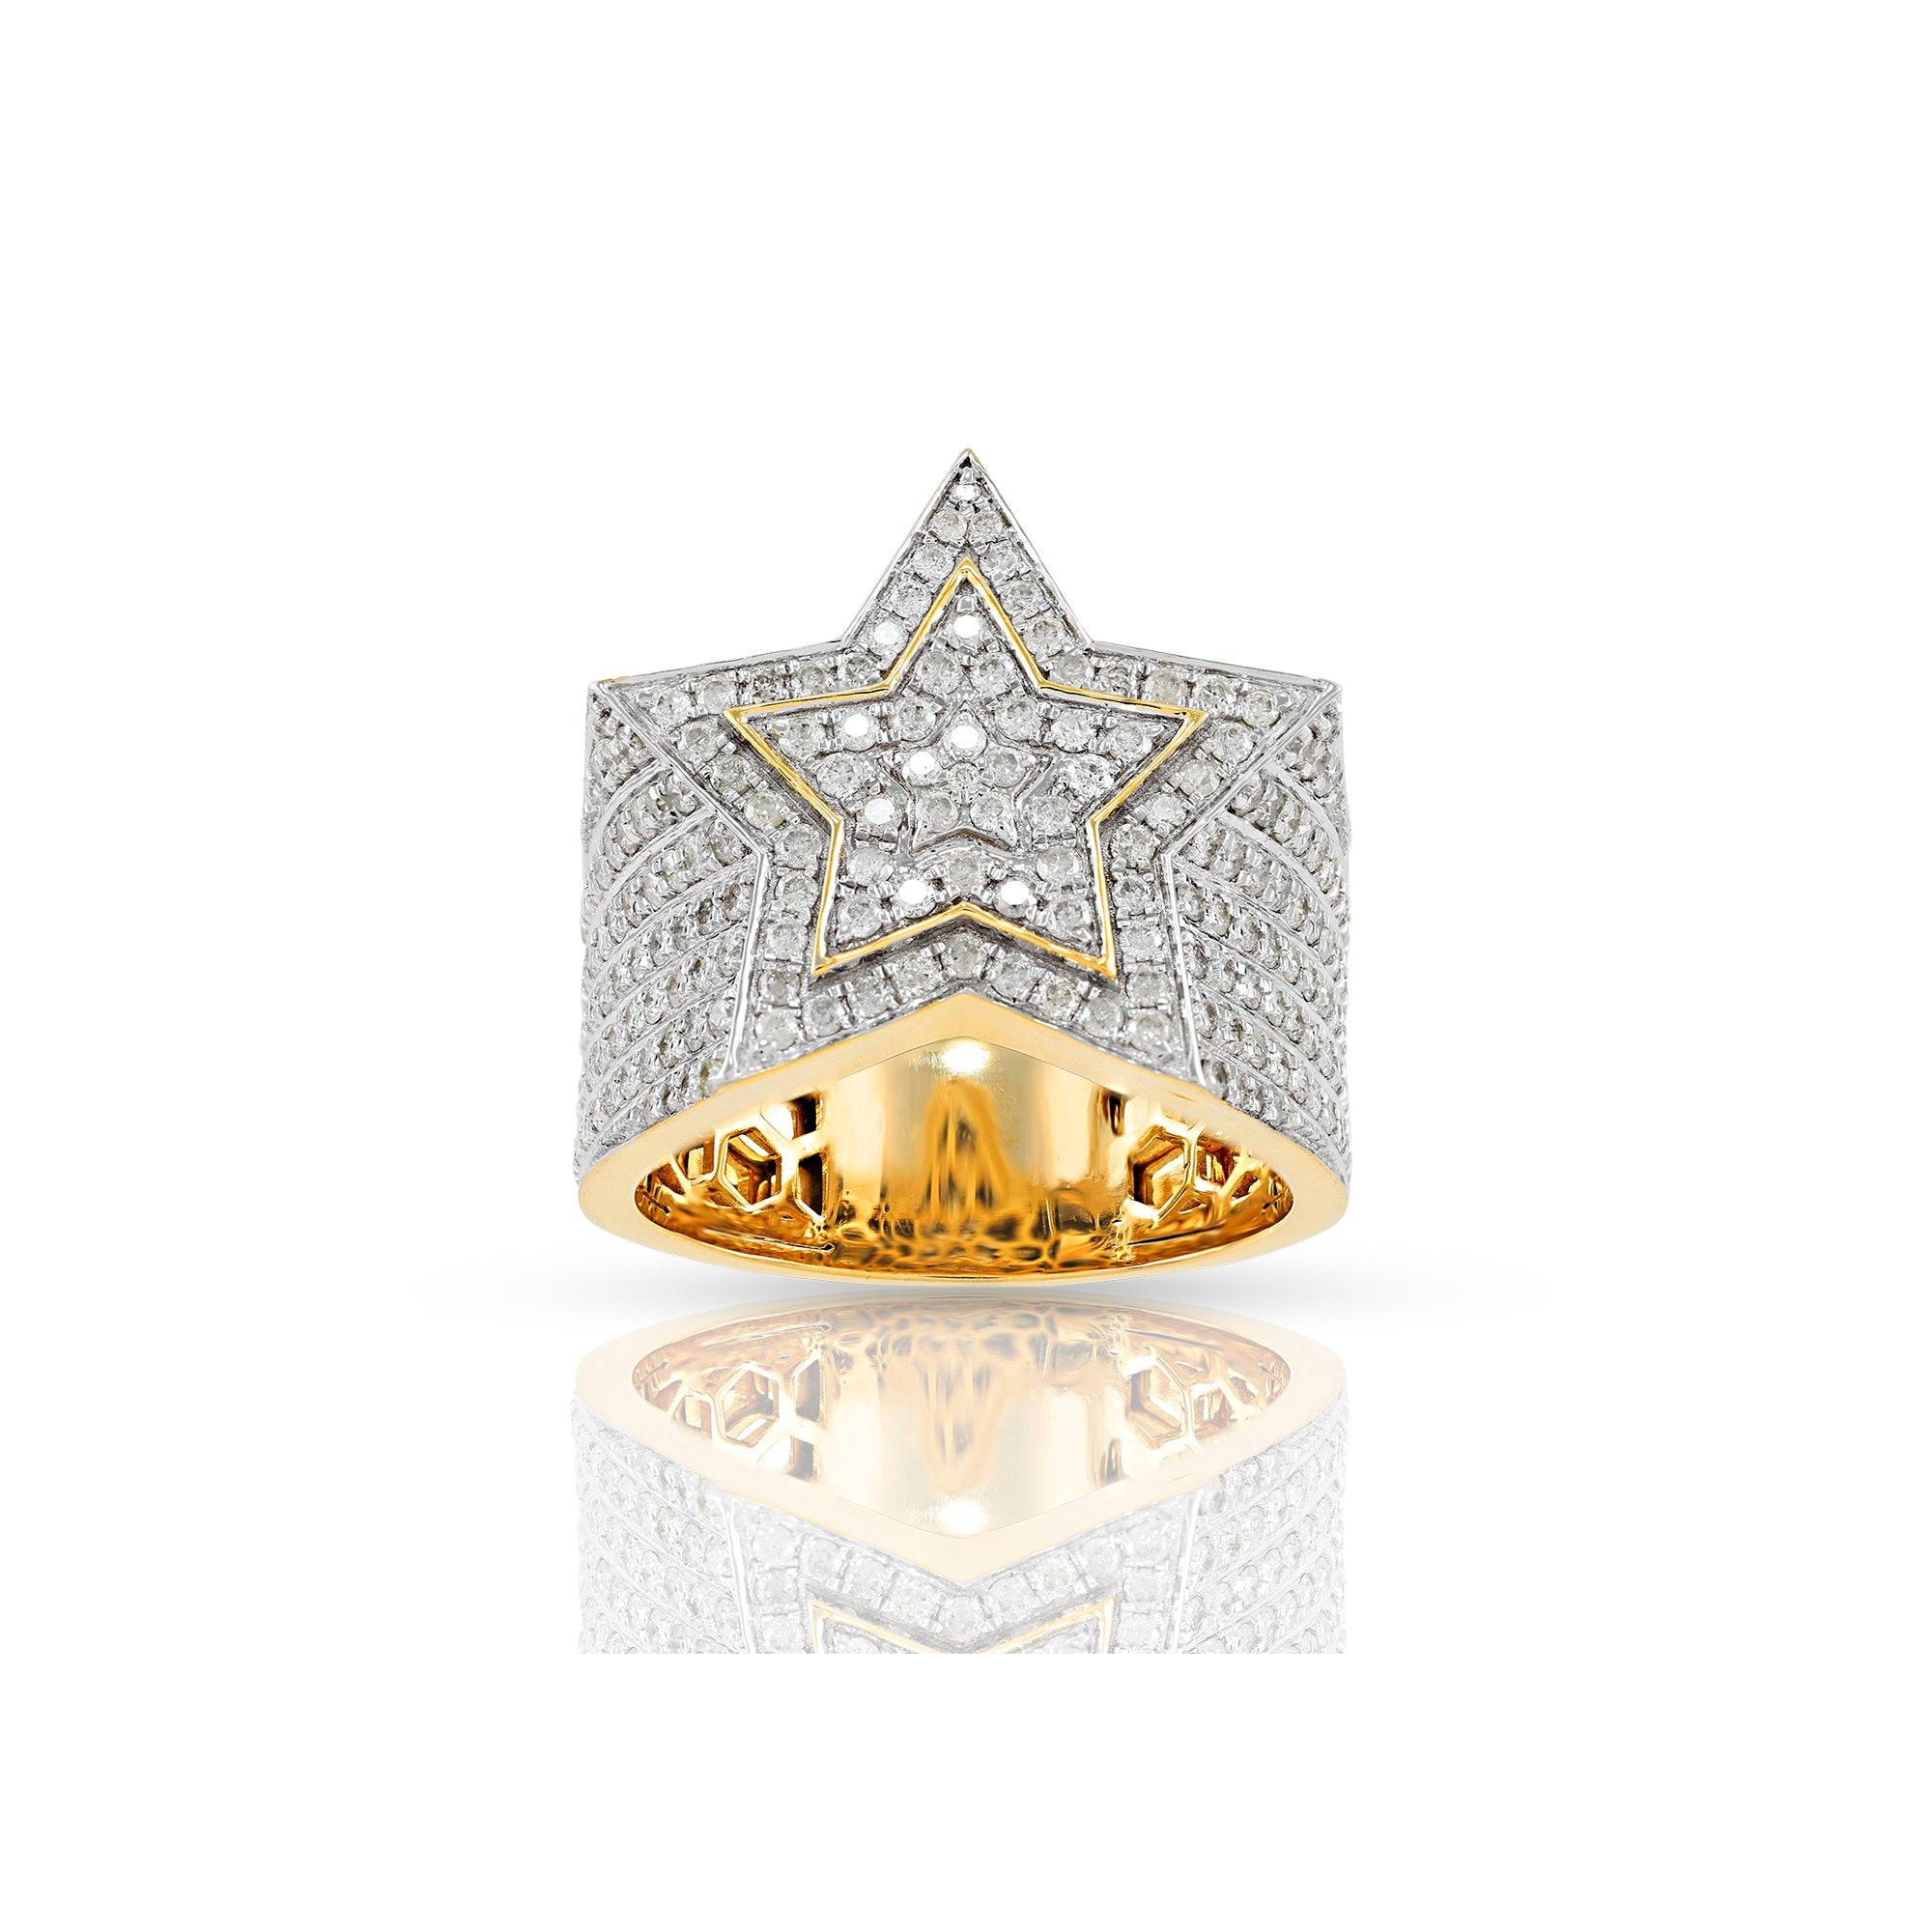 22mm Yellow Gold White Diamond Men's Star Ring by Rafaela Jewelry